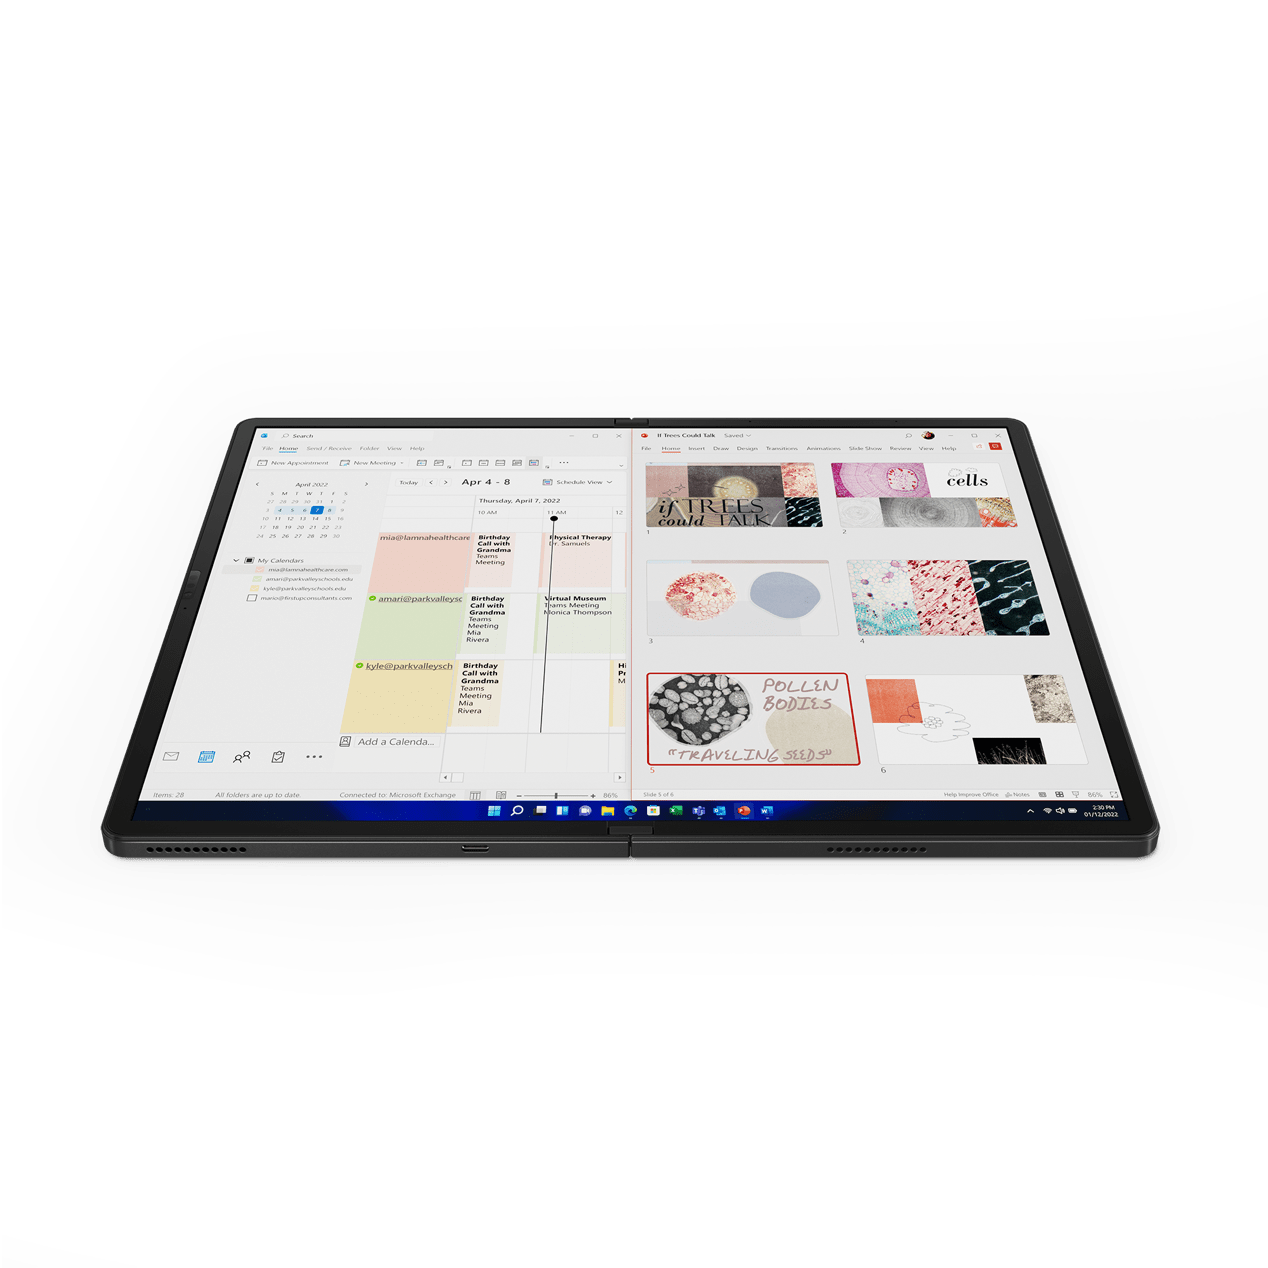 全新一代折叠屏笔记本ThinkPad X1 Fold 2022上市，技术创变引领未来